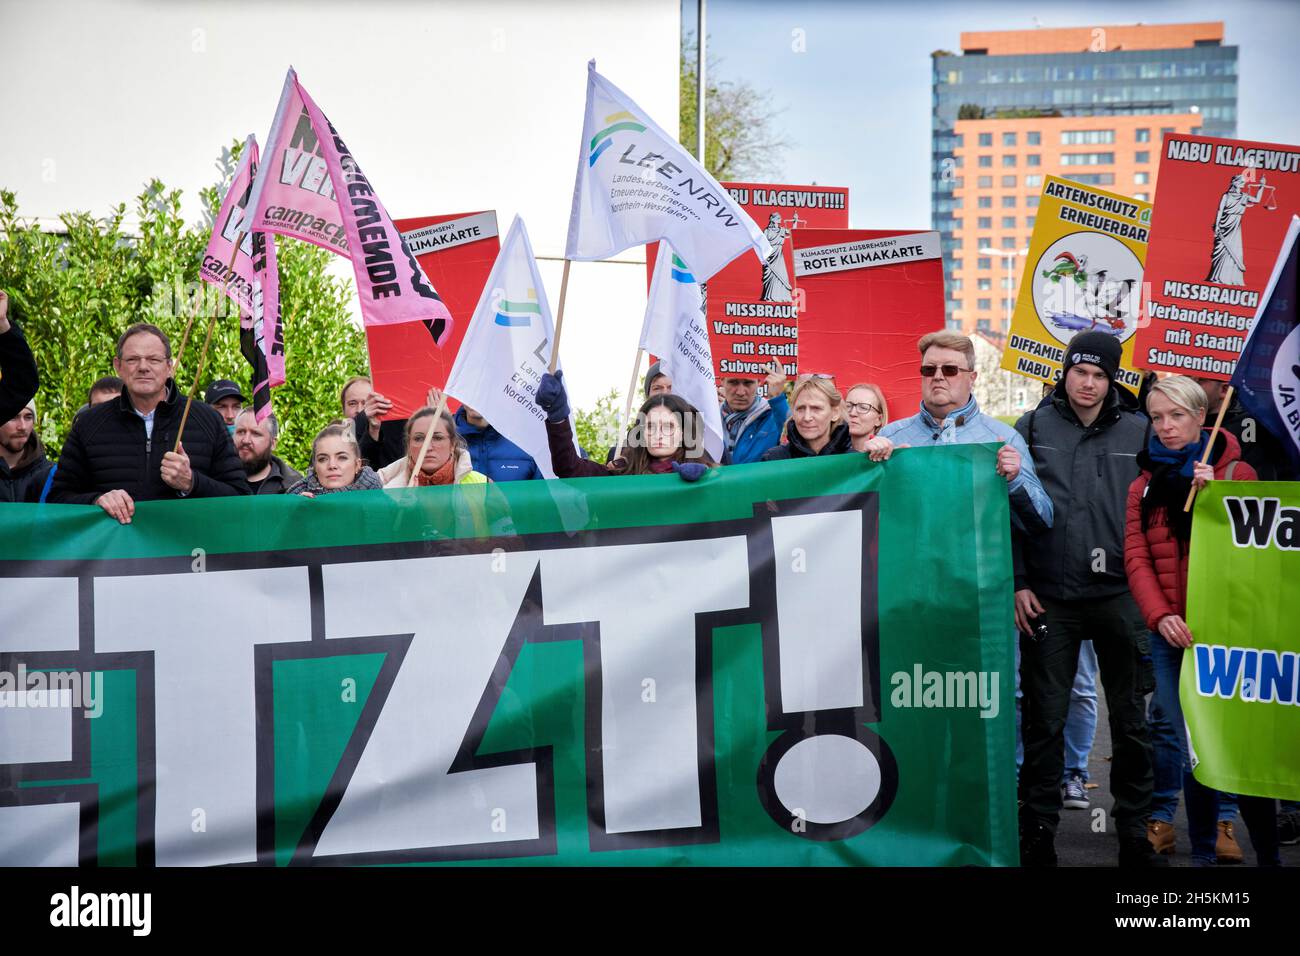 Der Landesverband Erneuerbare Energien NRW demonstriert gegen die, aus ihren Augen, Klagewelle gegen Windkraftalagen des NABU-NRW. Foto de stock